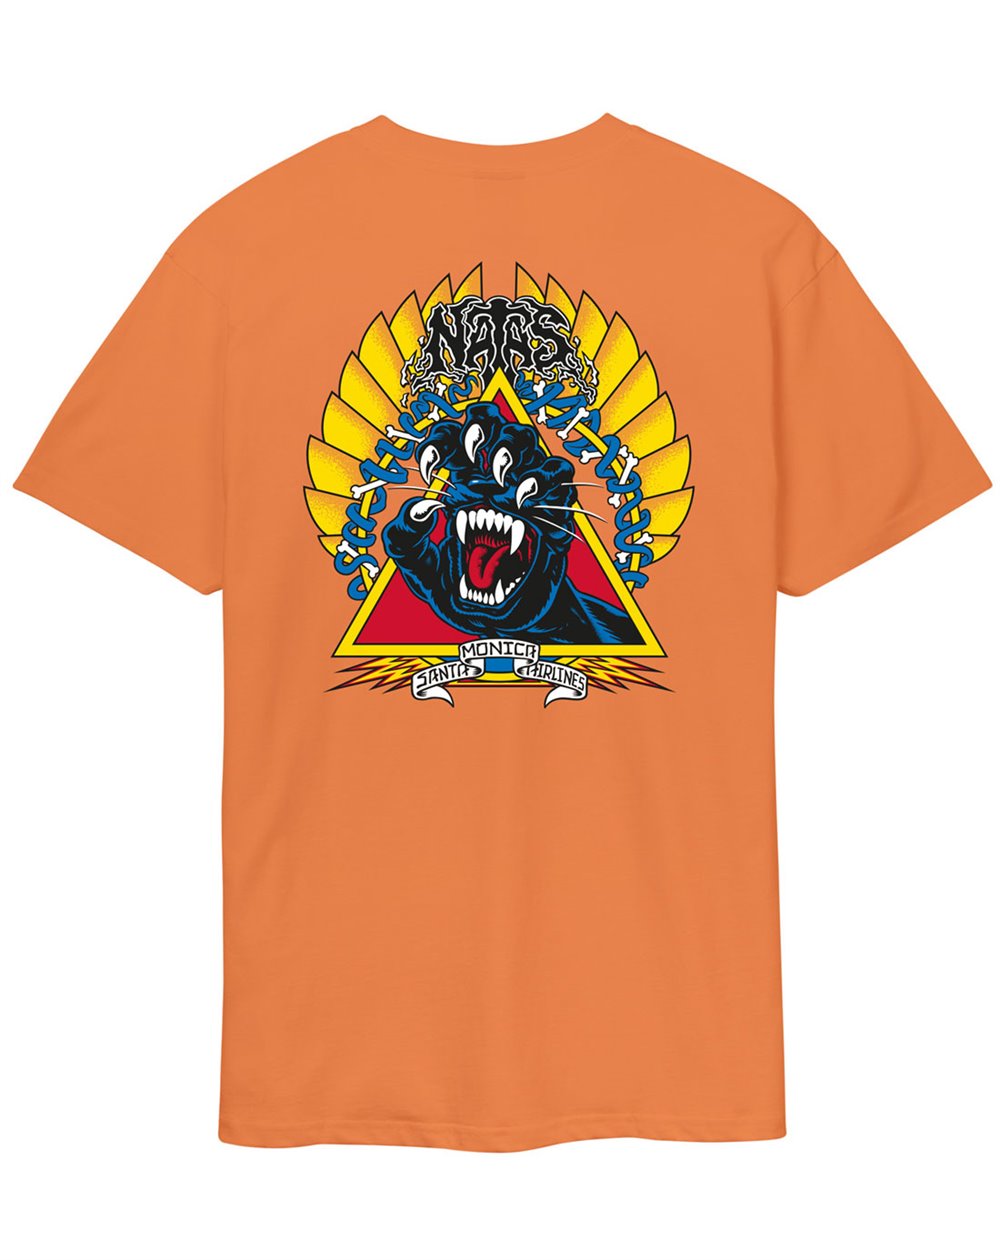 Santa Cruz T-Shirt Homme Natas Screaming Panther (Apricot)